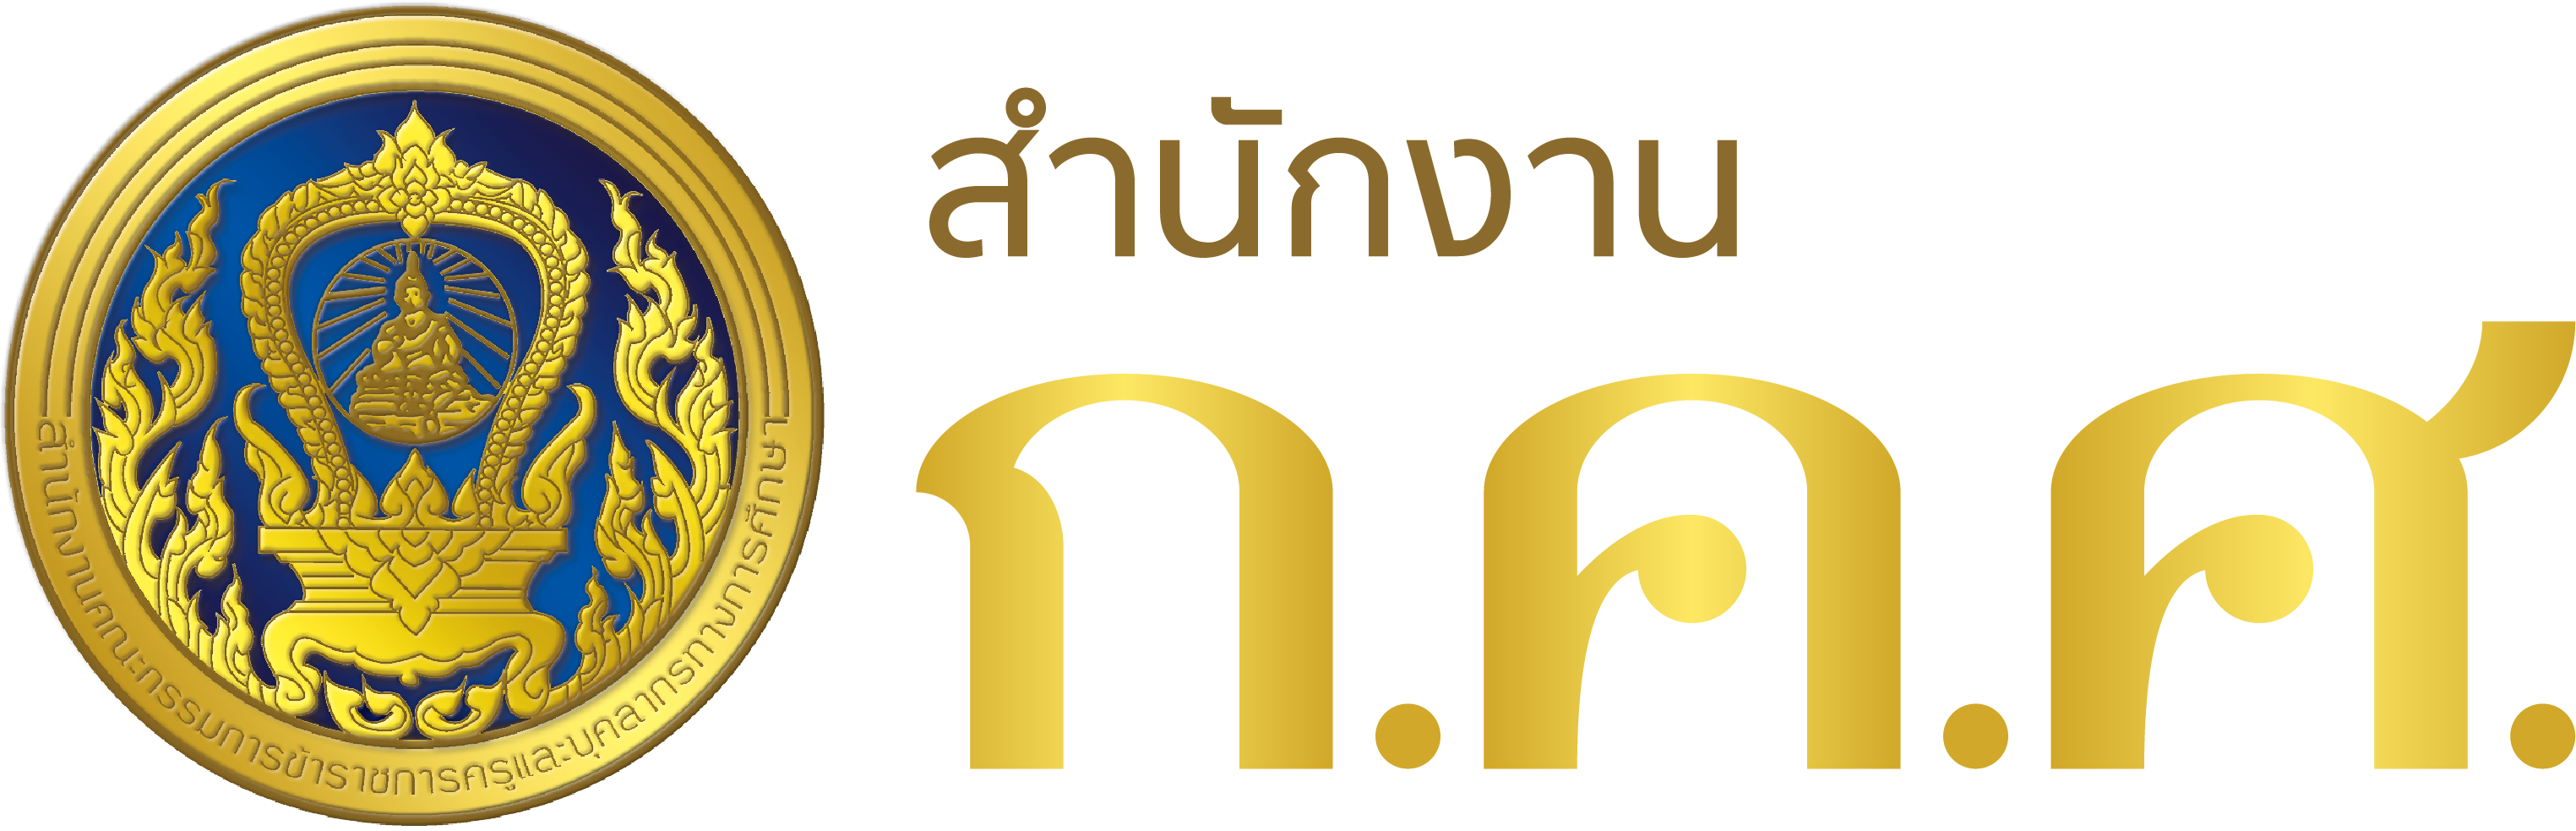 otepc logo 002